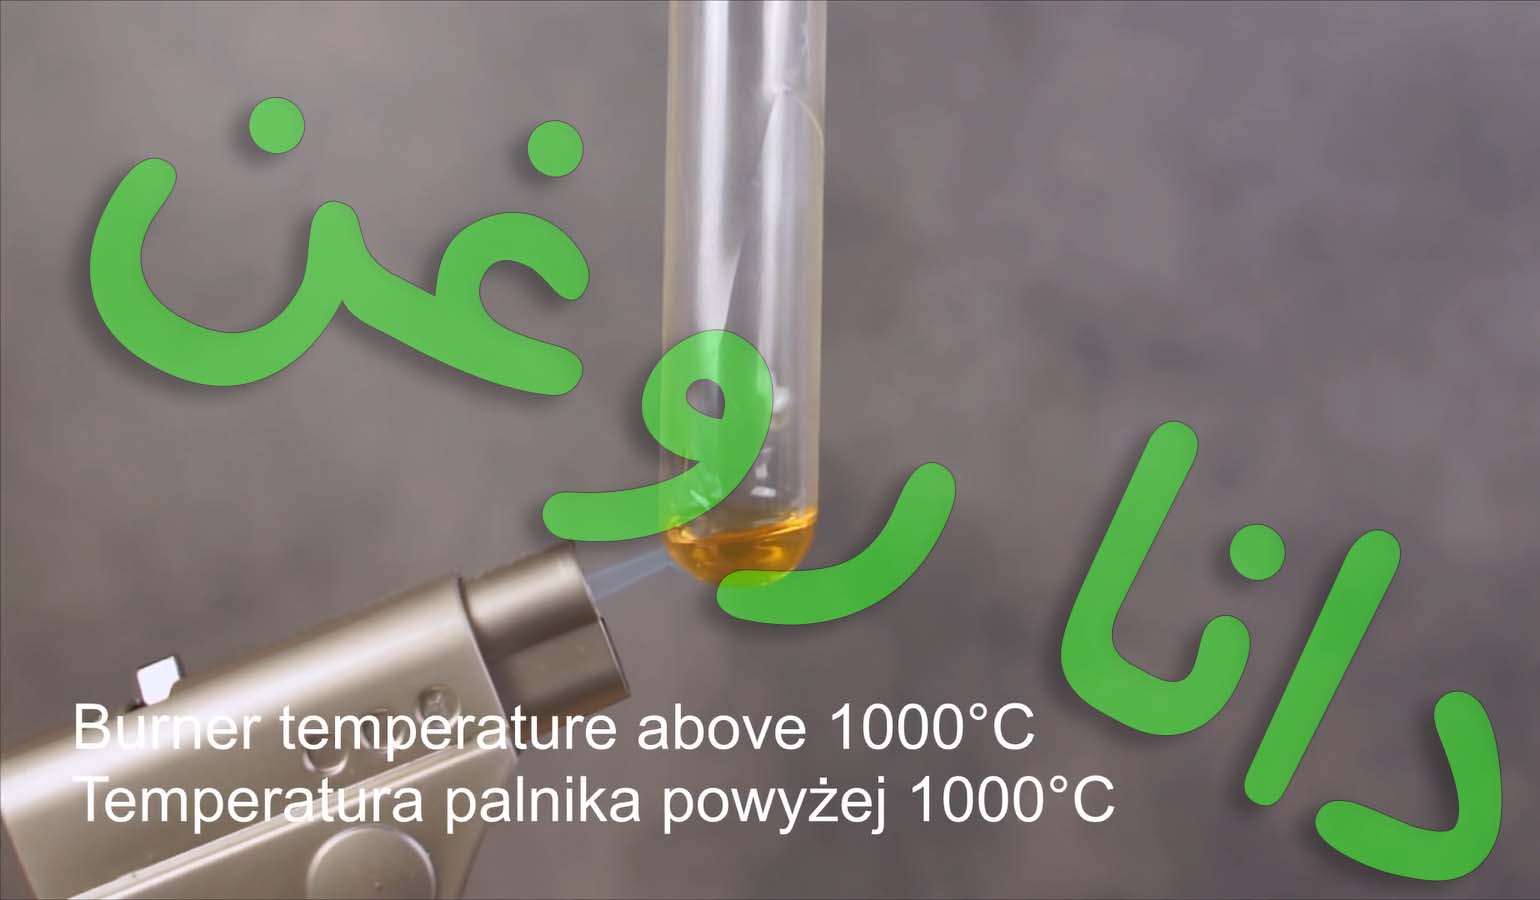 آزمایش تغییر حالت روغن ریسینگ 10 60 مانول آلمان در دمای فوق داغ 1000 درجه سانتیگراد - دانا یدک